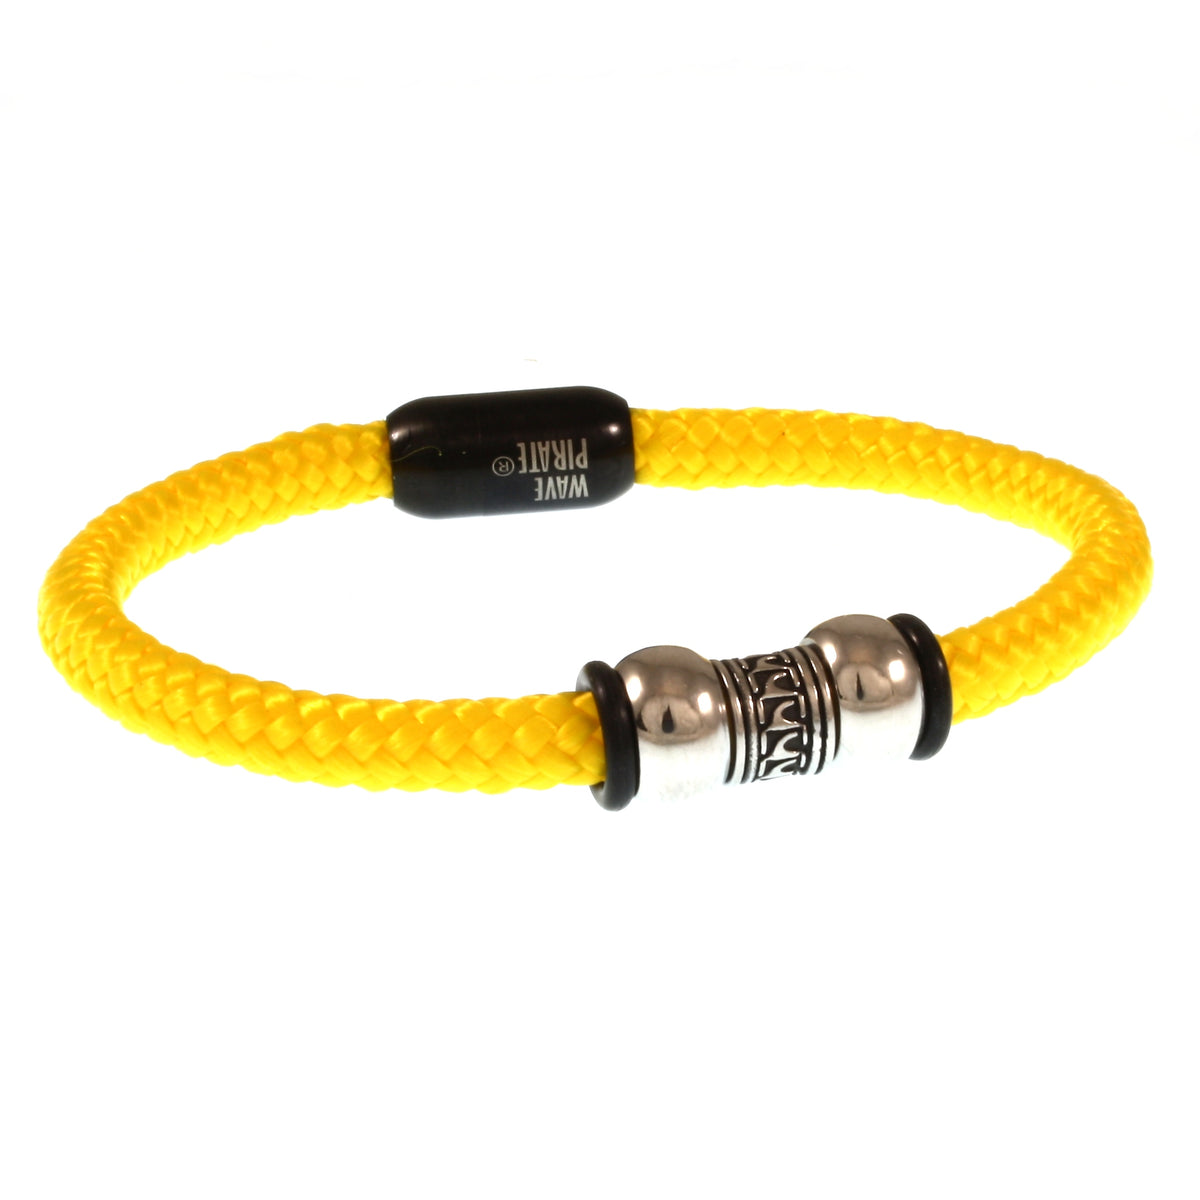 Herren-Segeltau-Armband-atoll-gelb-schwarz-geflochten-Edelstahlverschluss-vorn-wavepirate-shop-st